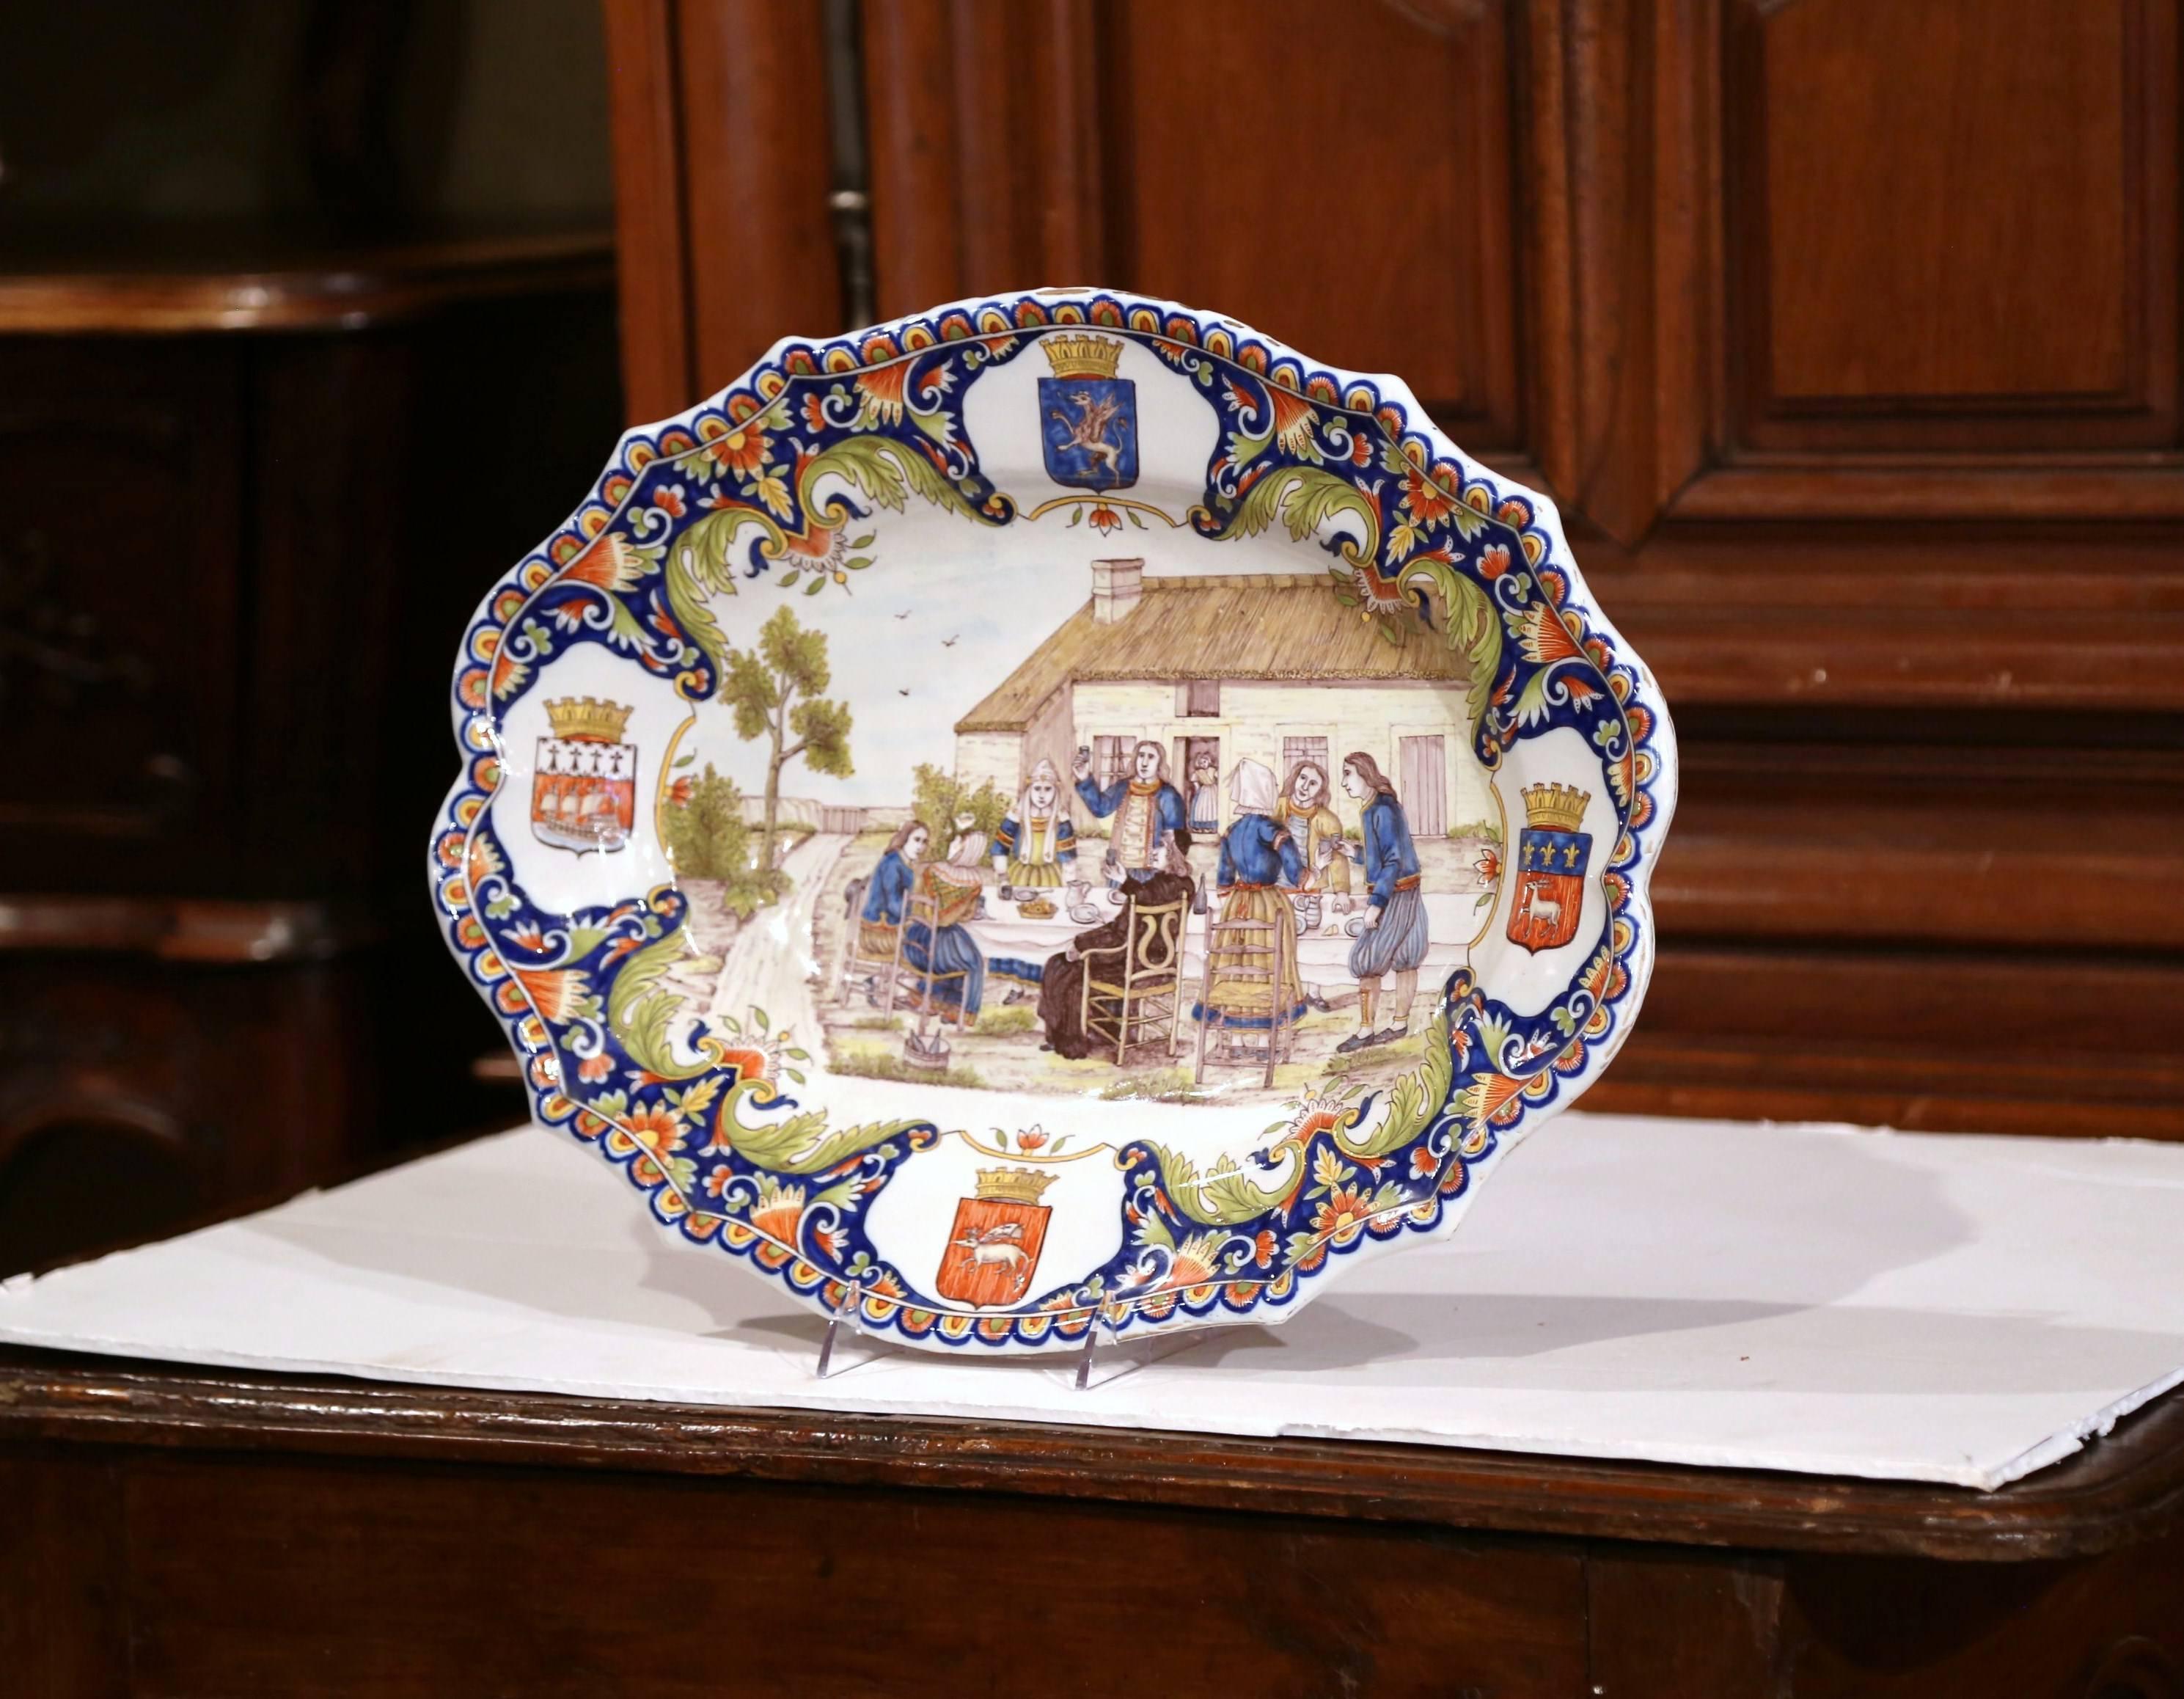 Ce grand plat en céramique a été sculpté en Bretagne, France, vers 1880. L'assiette antique colorée présente une scène de banquet en plein air peinte à la main avec des Bretons qui mangent, boivent et sont vêtus de vêtements traditionnels. Le plat